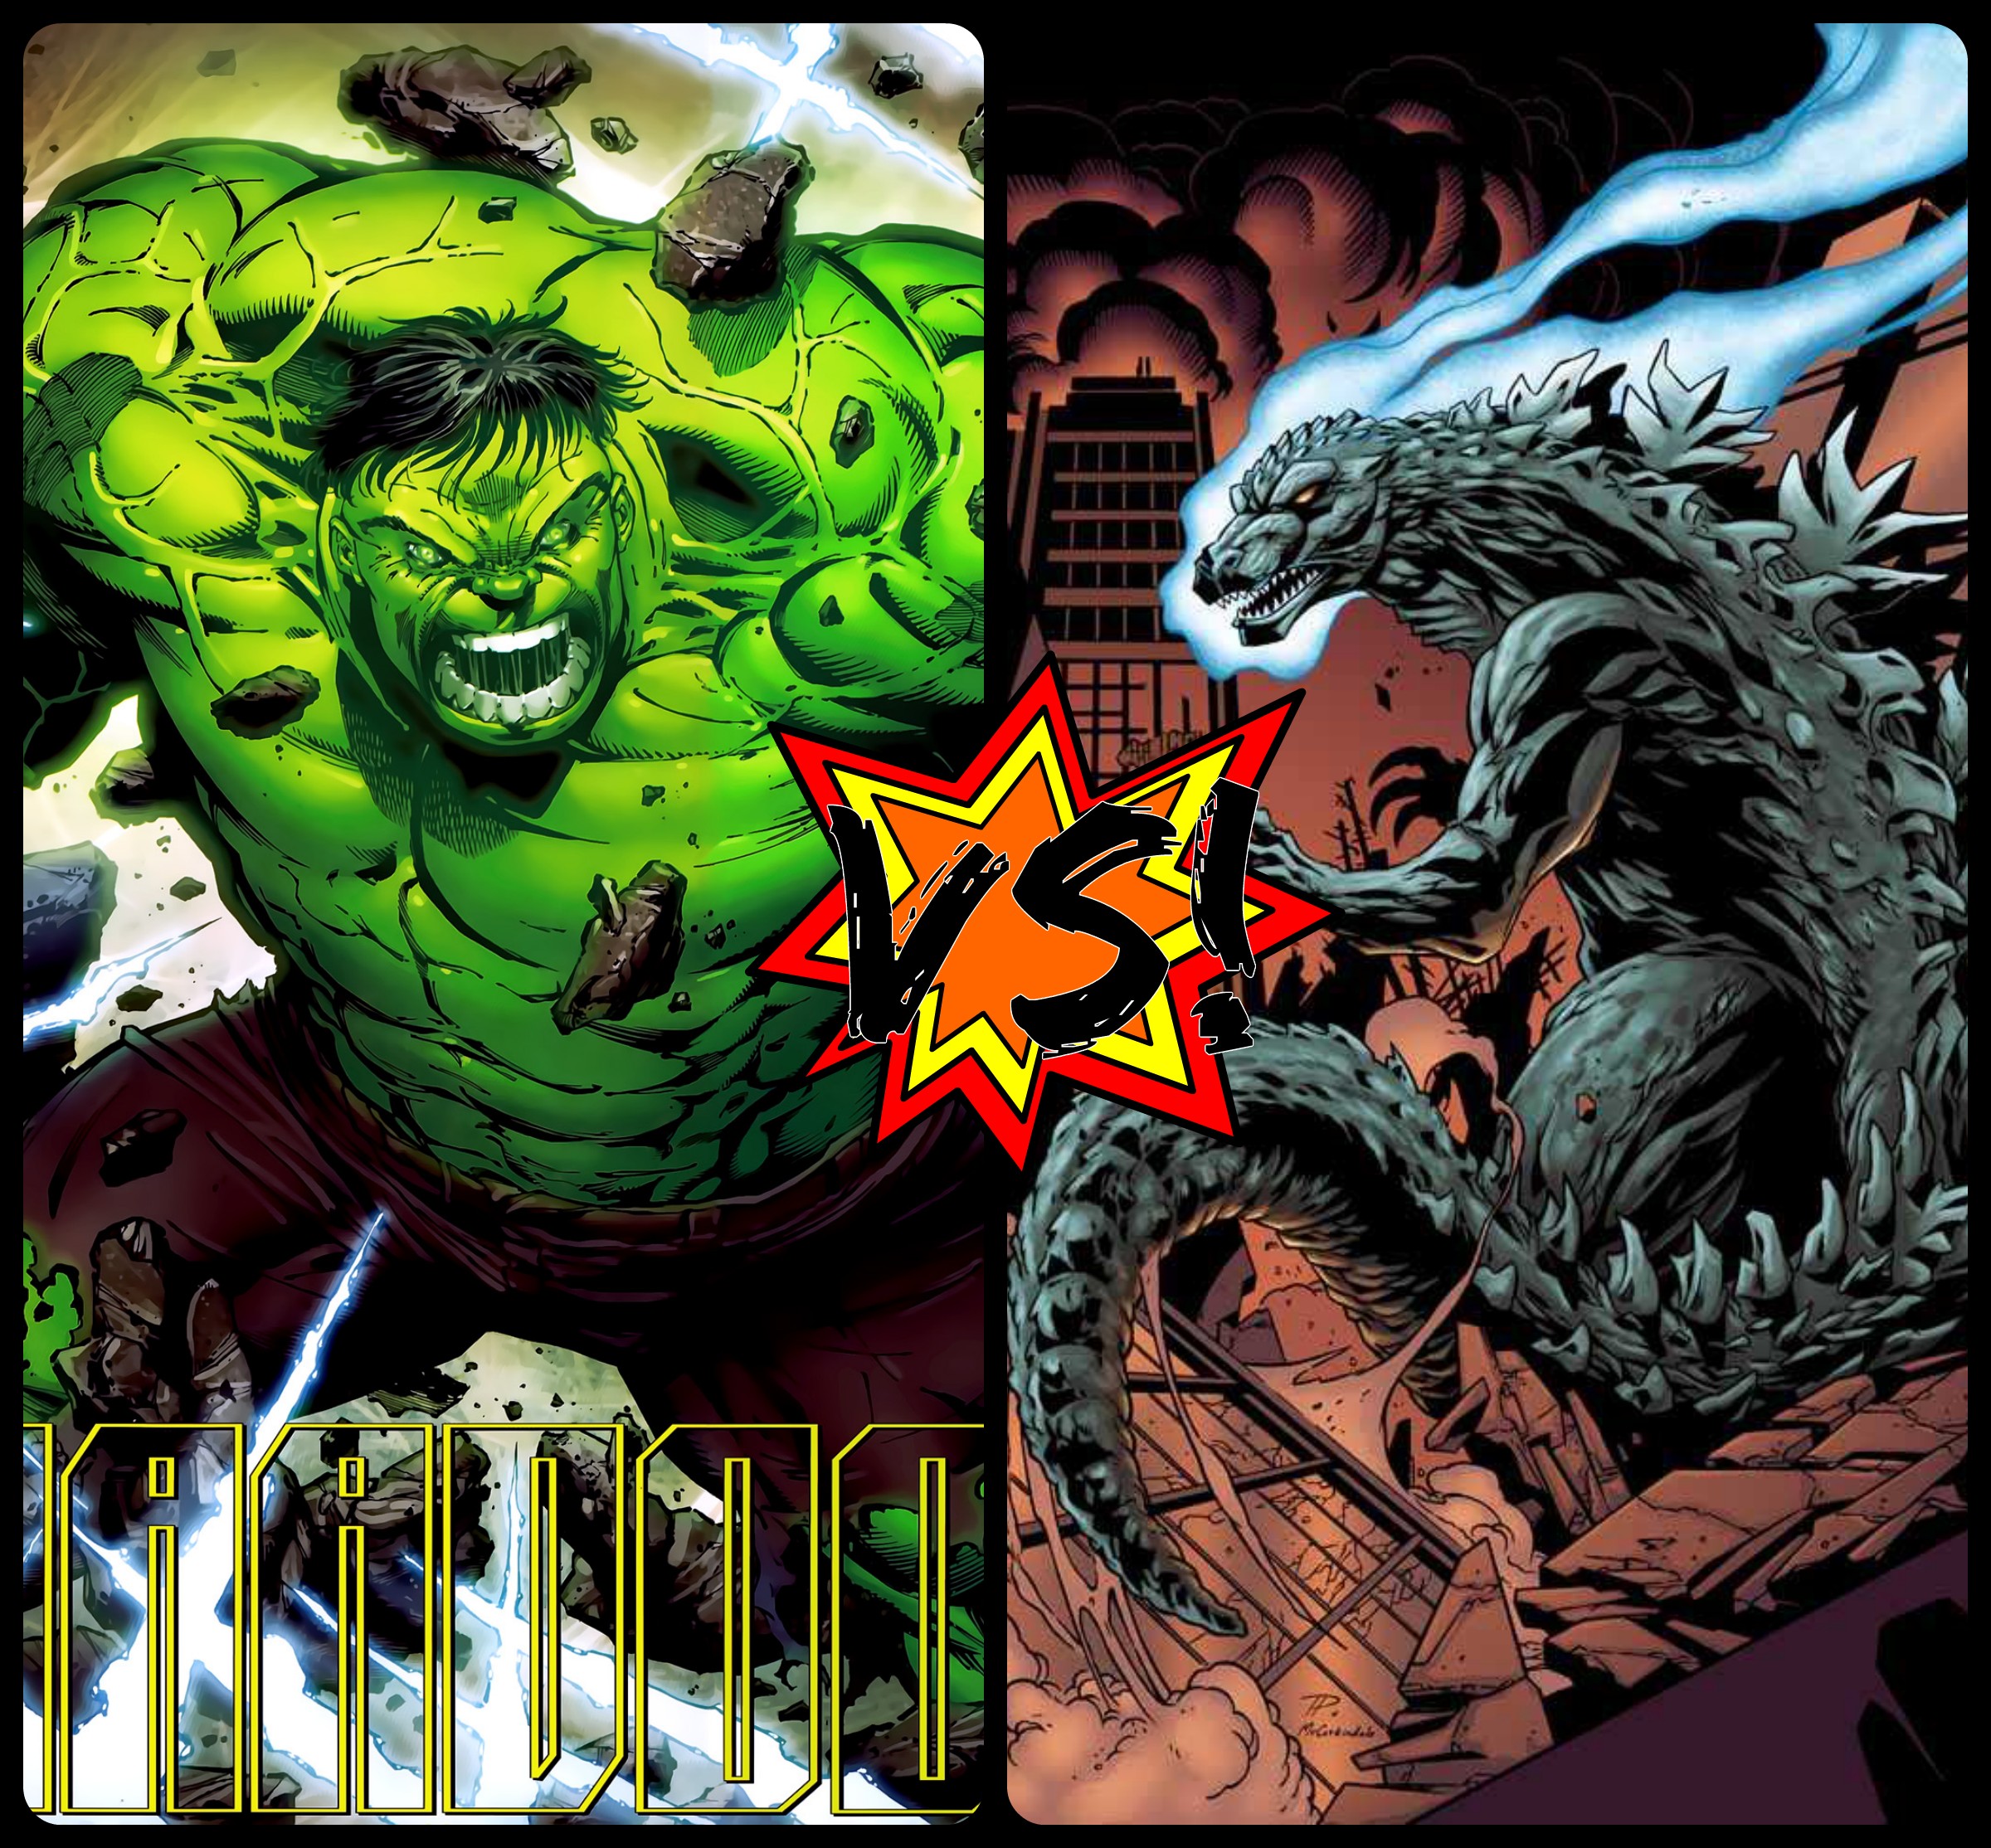 Who would win godzilla or hulk